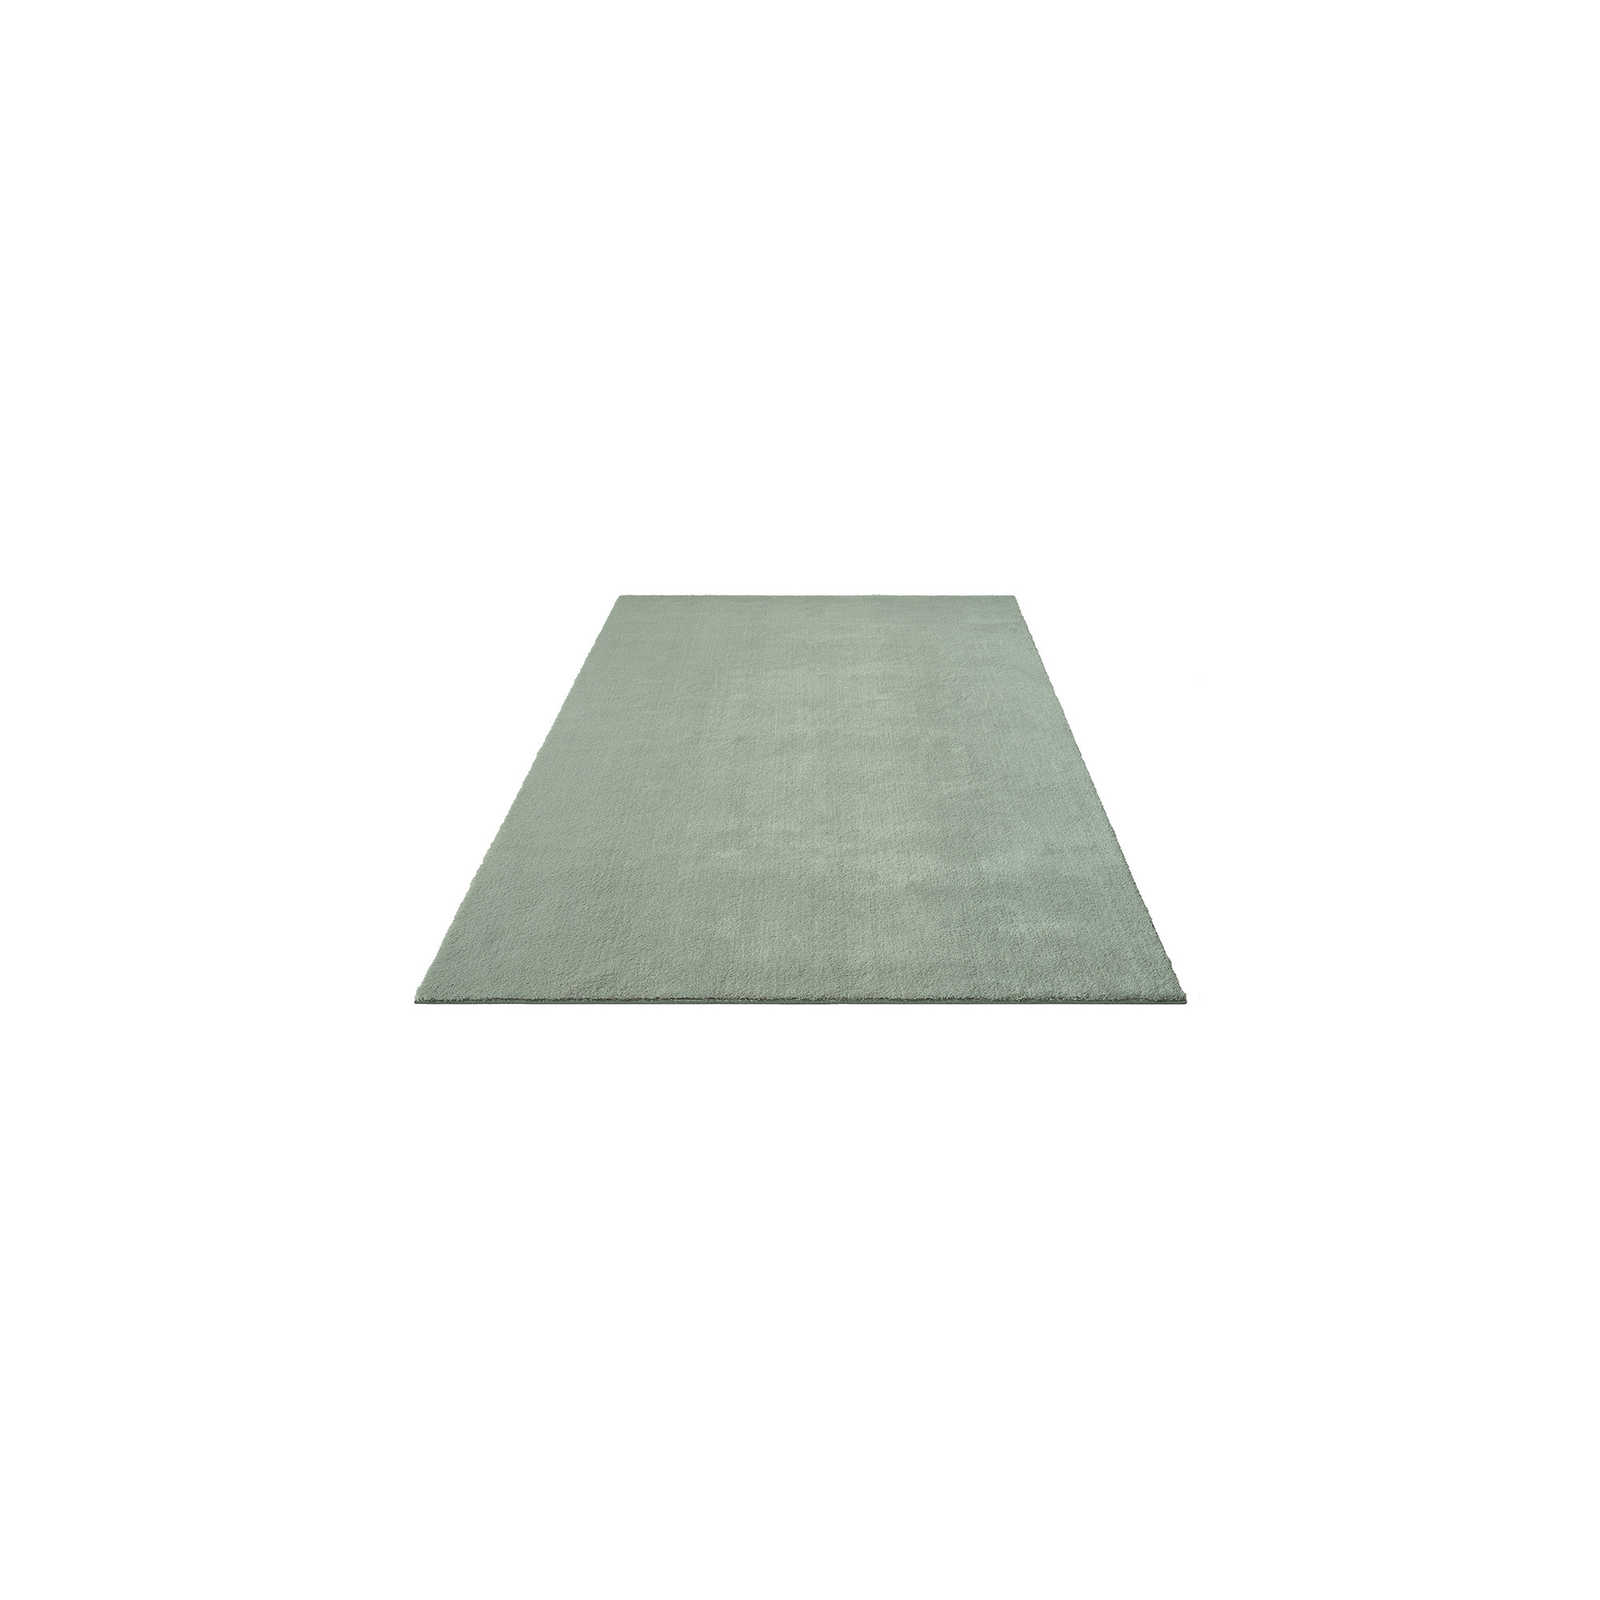 Zacht hoogpolig tapijt in groen - 170 x 120 cm
